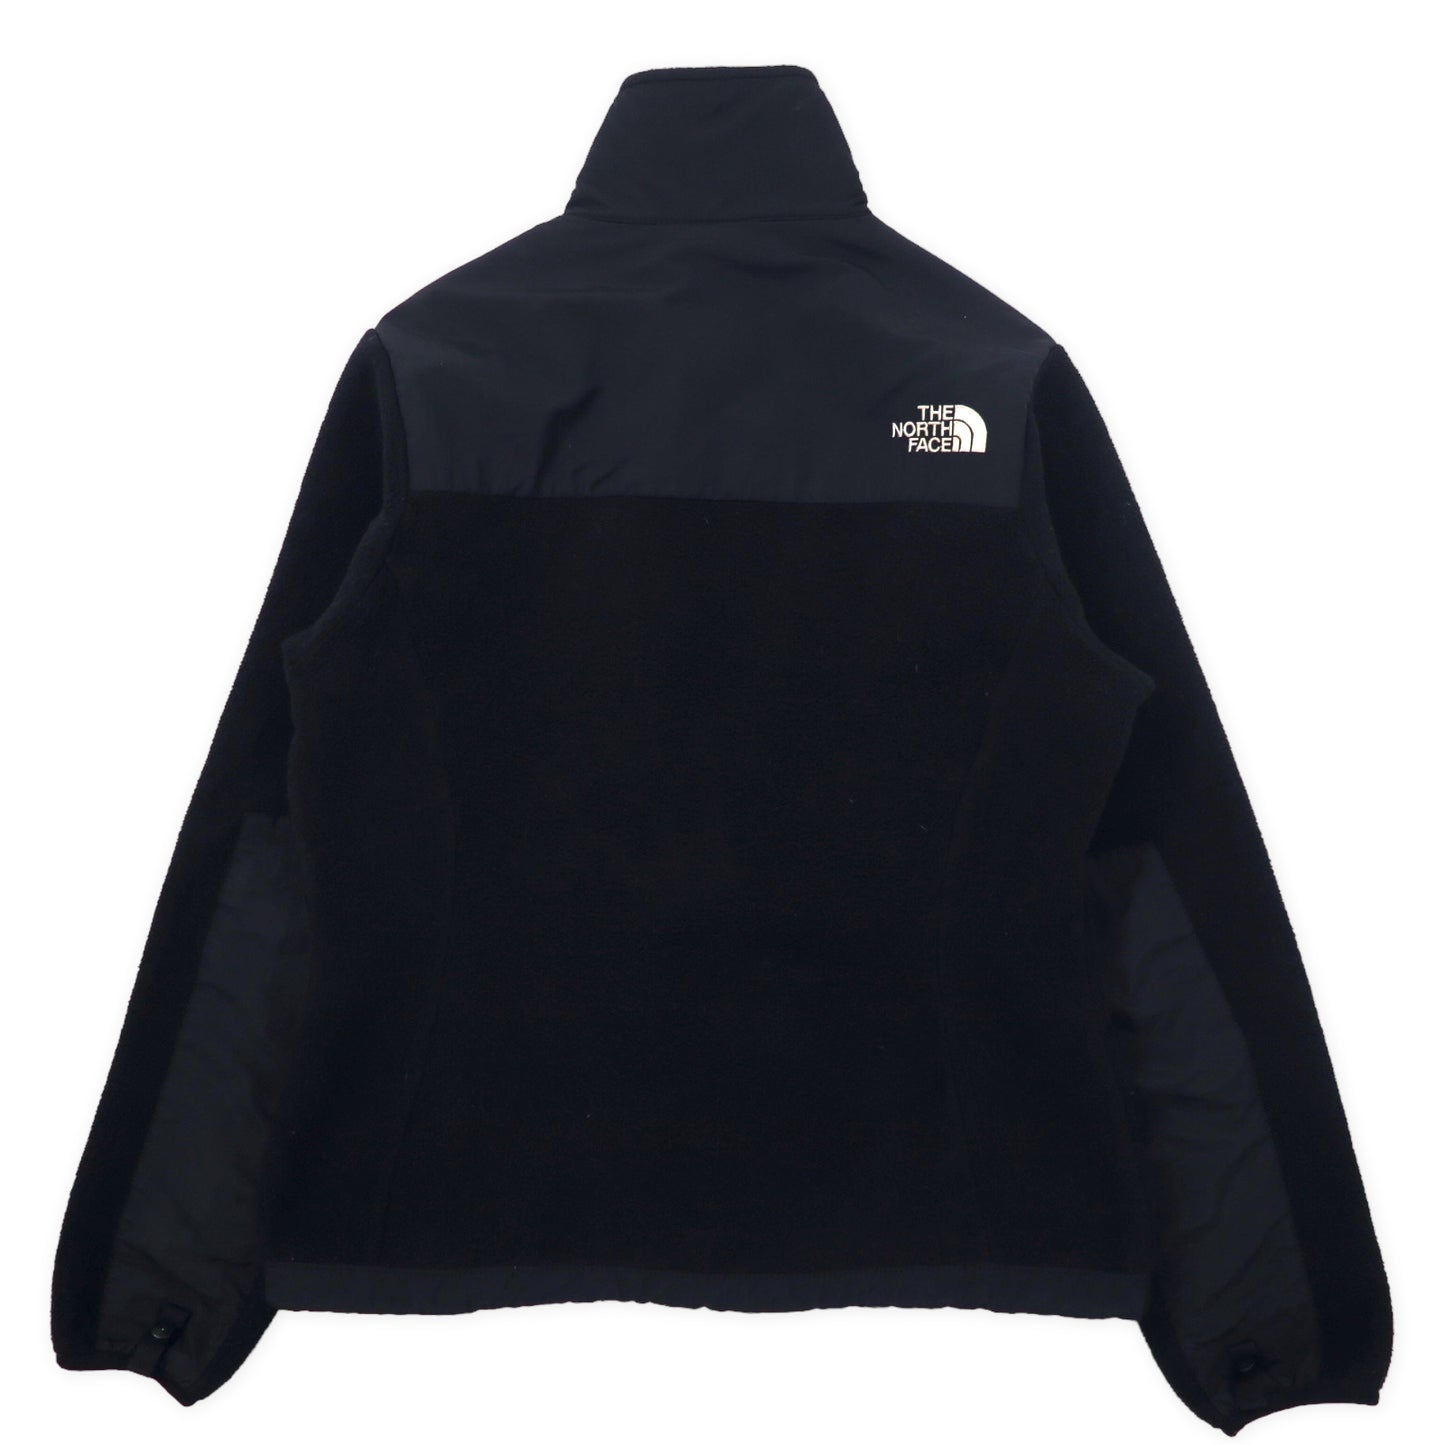 THE NORTH FACE Denari Jacket FLEECE XS Black polyester logo 